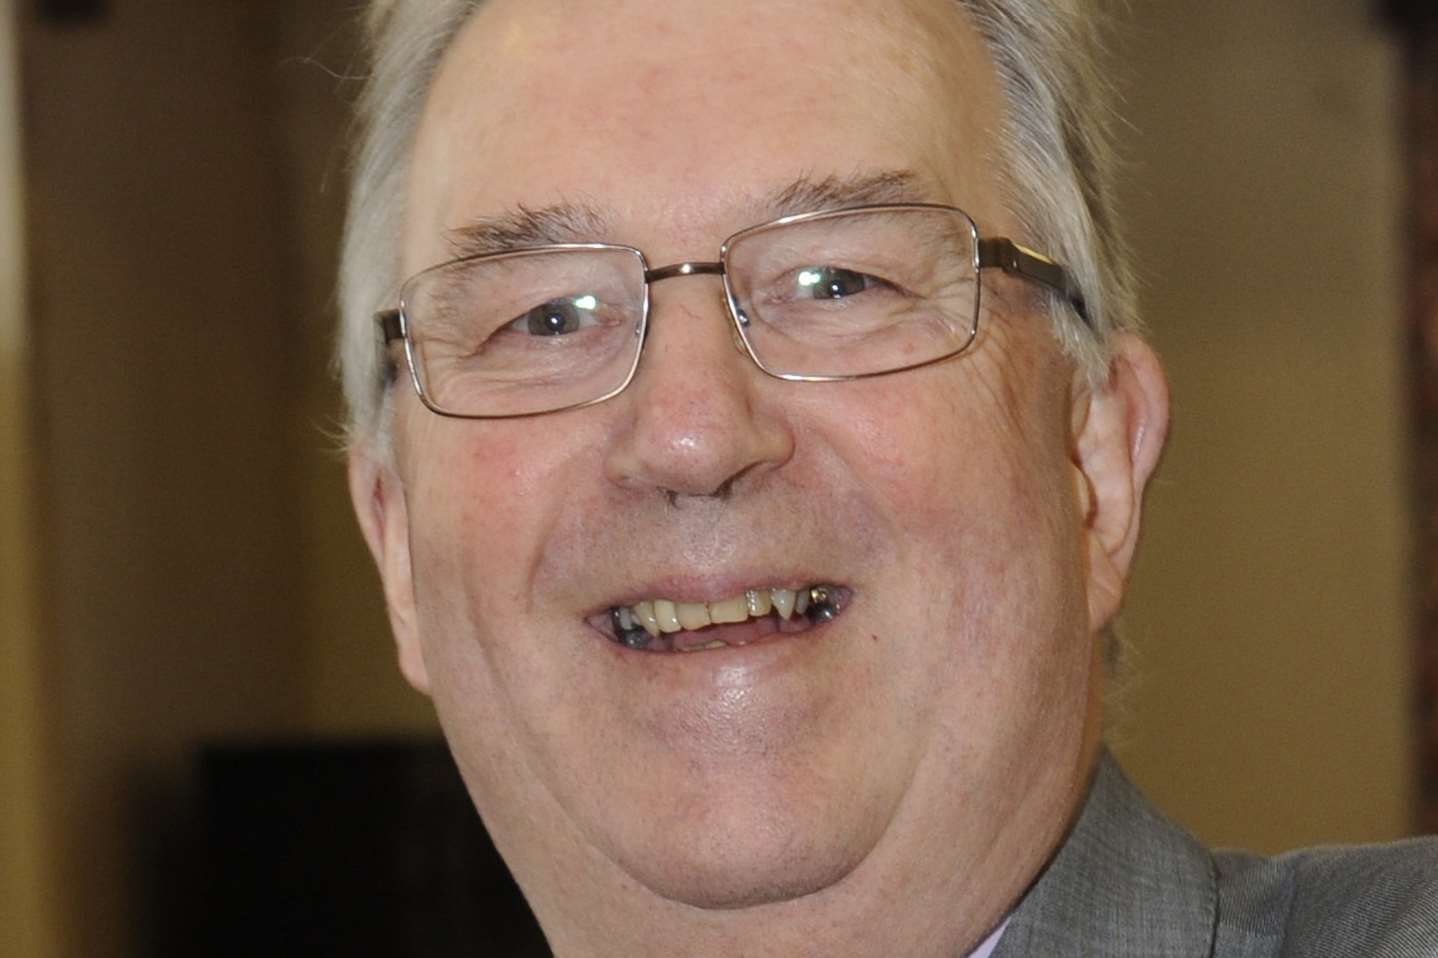 Dover District Council leader Paul Watkins